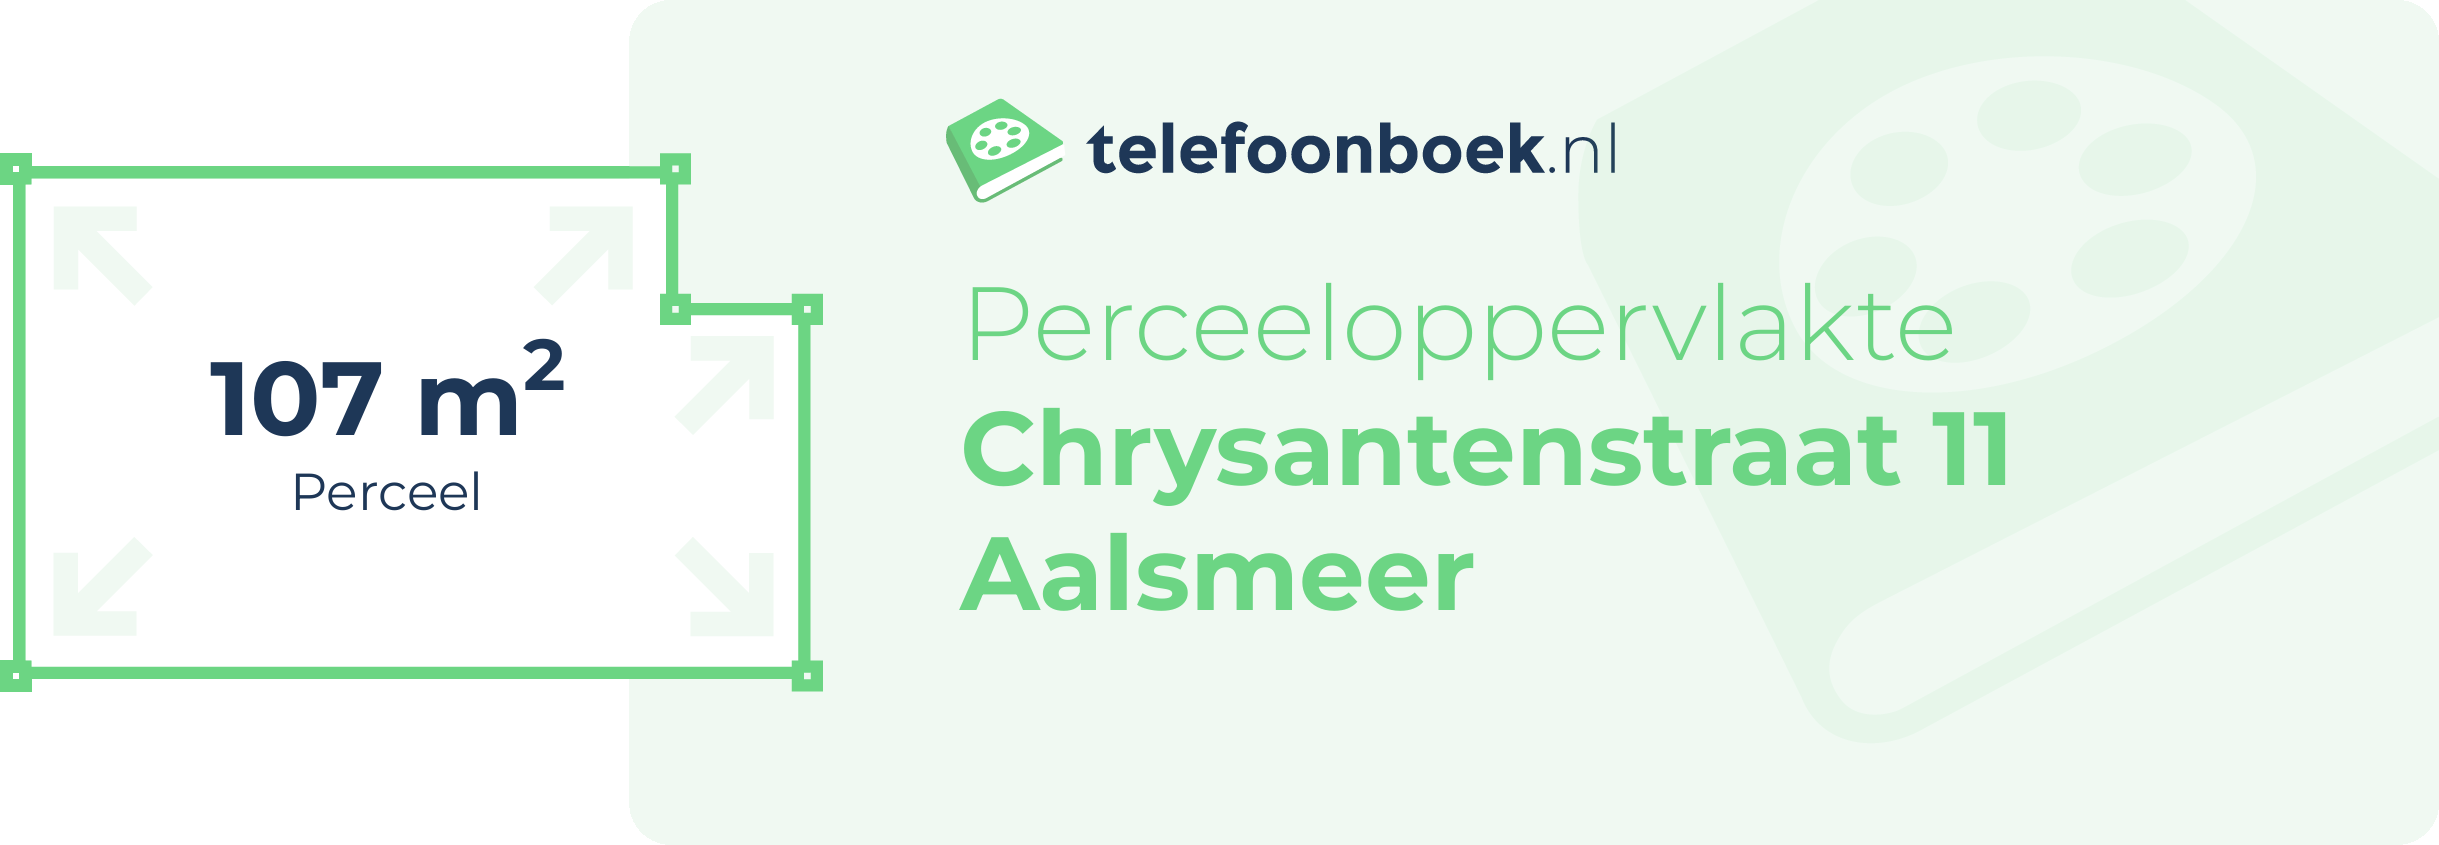 Perceeloppervlakte Chrysantenstraat 11 Aalsmeer